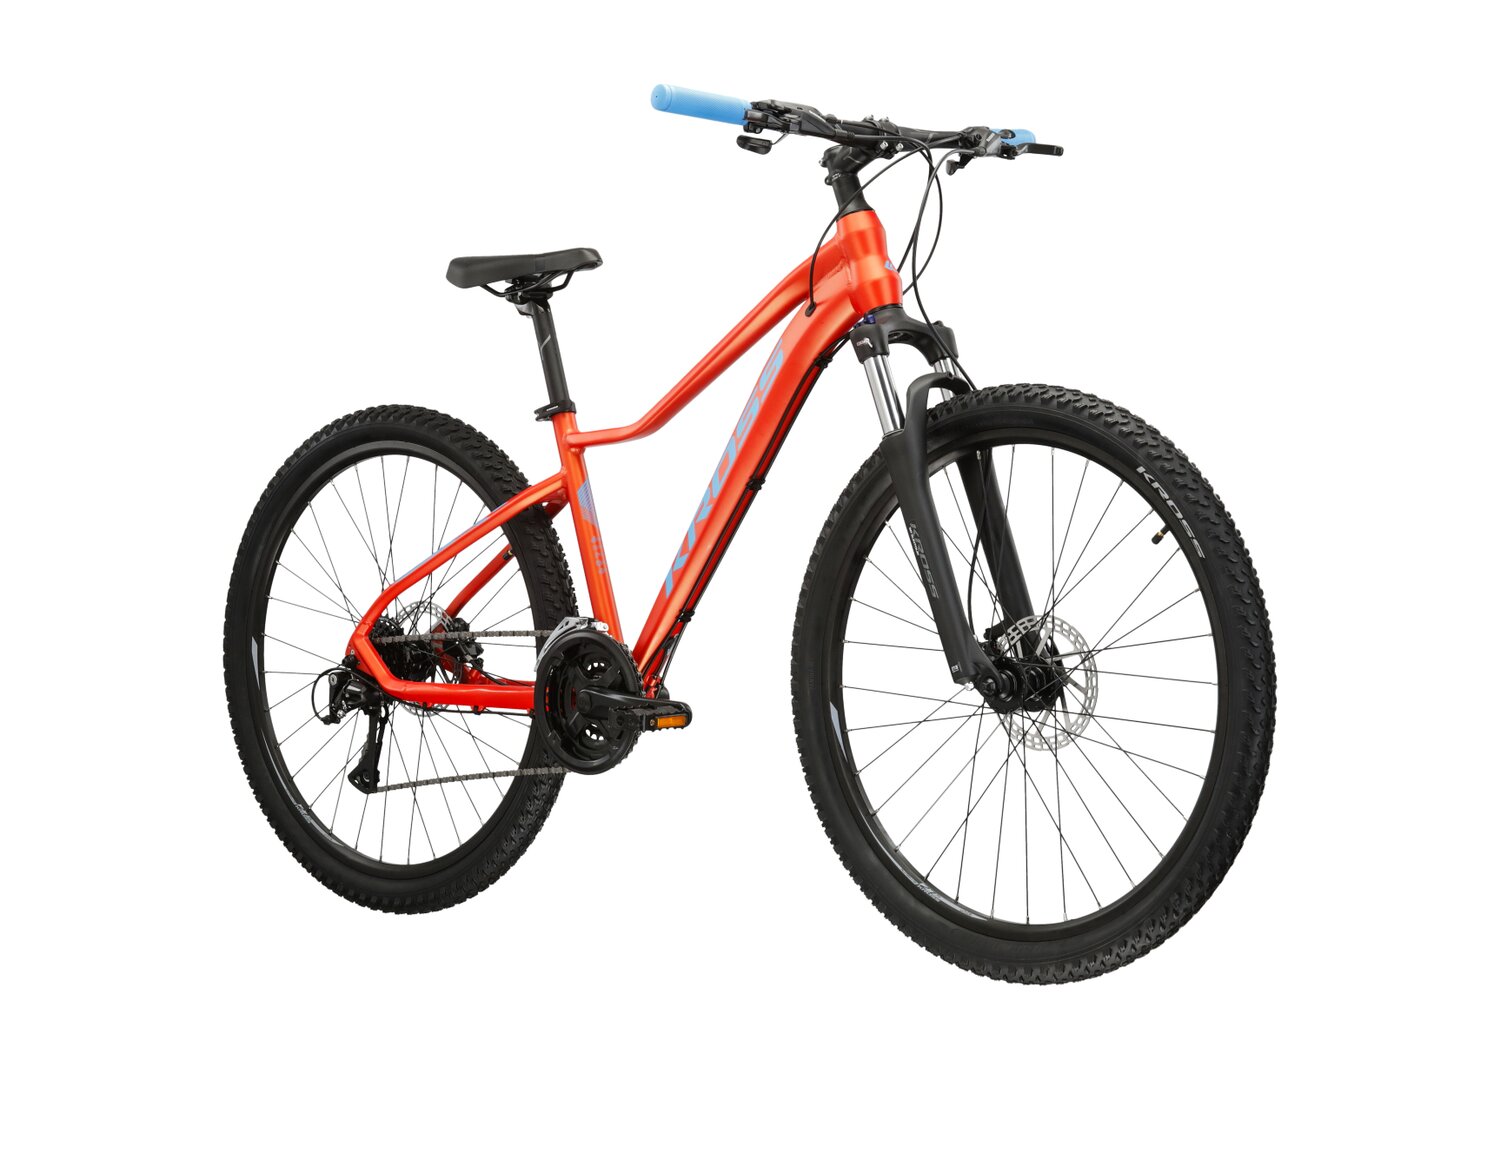 Damski rower górski MTB Woman Kross Lea 6.0 na aluminiowej ramie w kolorze pomarańczowym wyposażony w osprzęt Shimano 